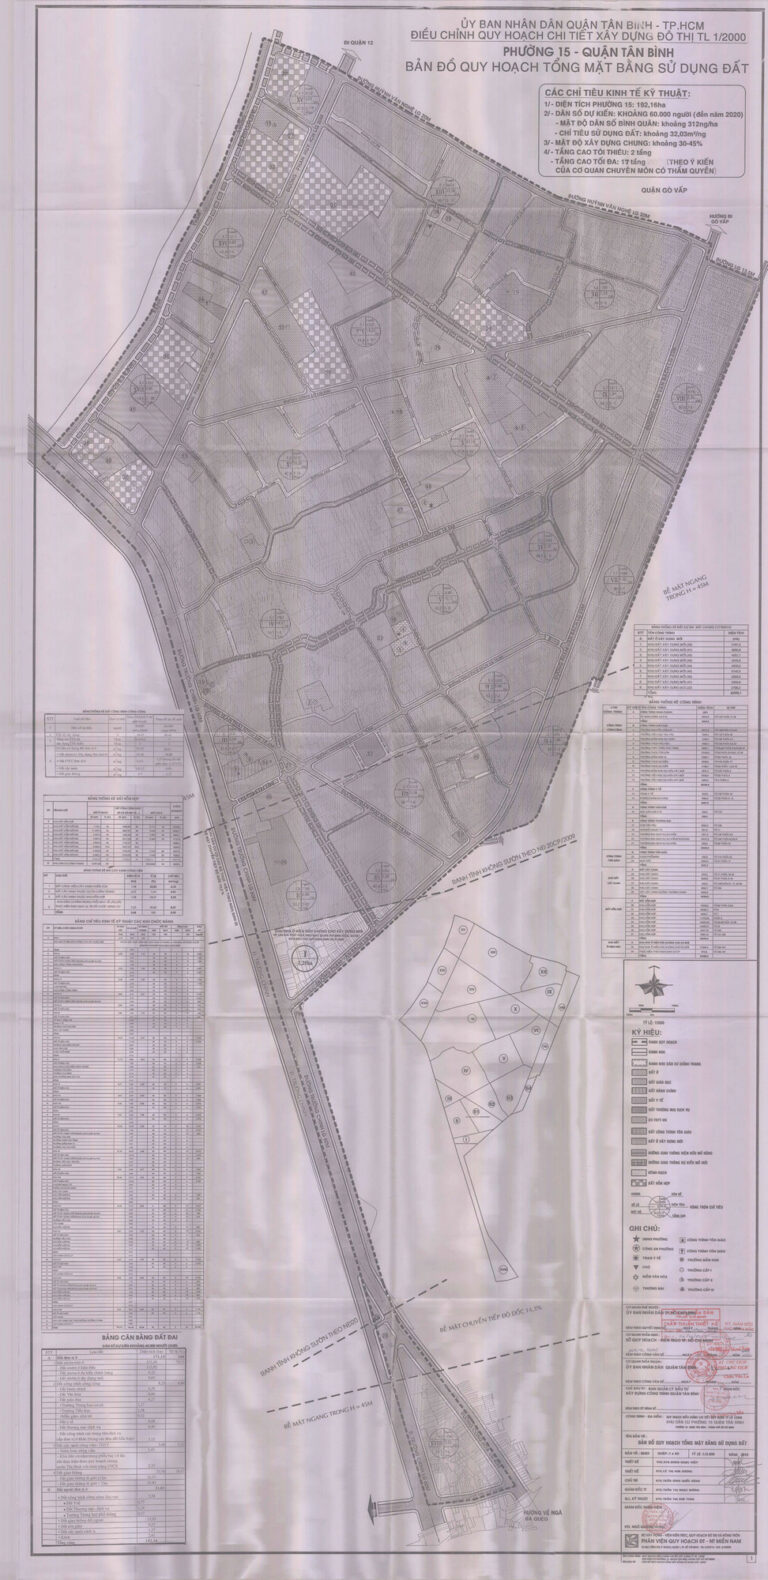 Bản đồ quy hoạch 1/2000 khu dân cư Phường 15, Quận Tân Bình